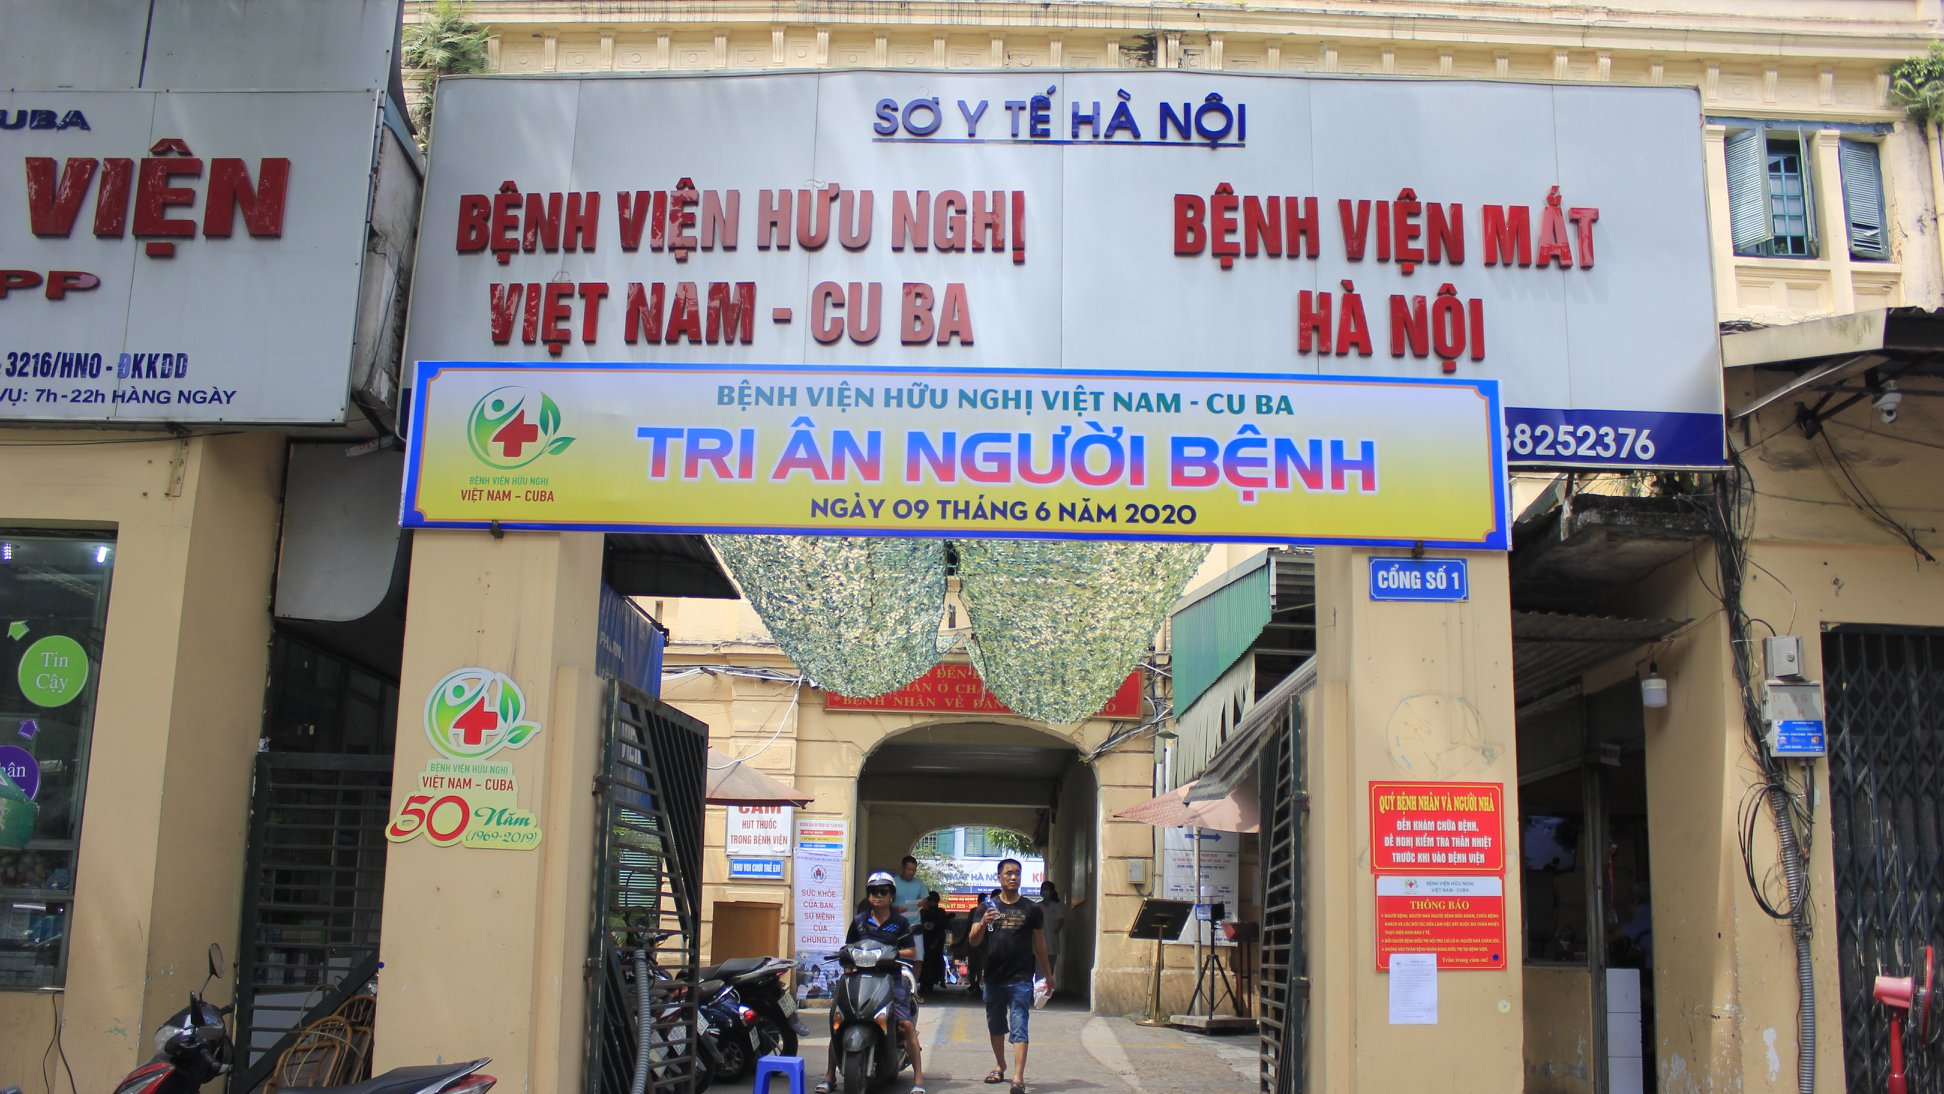 Bệnh viện Hữu Nghị Việt Nam Cuba